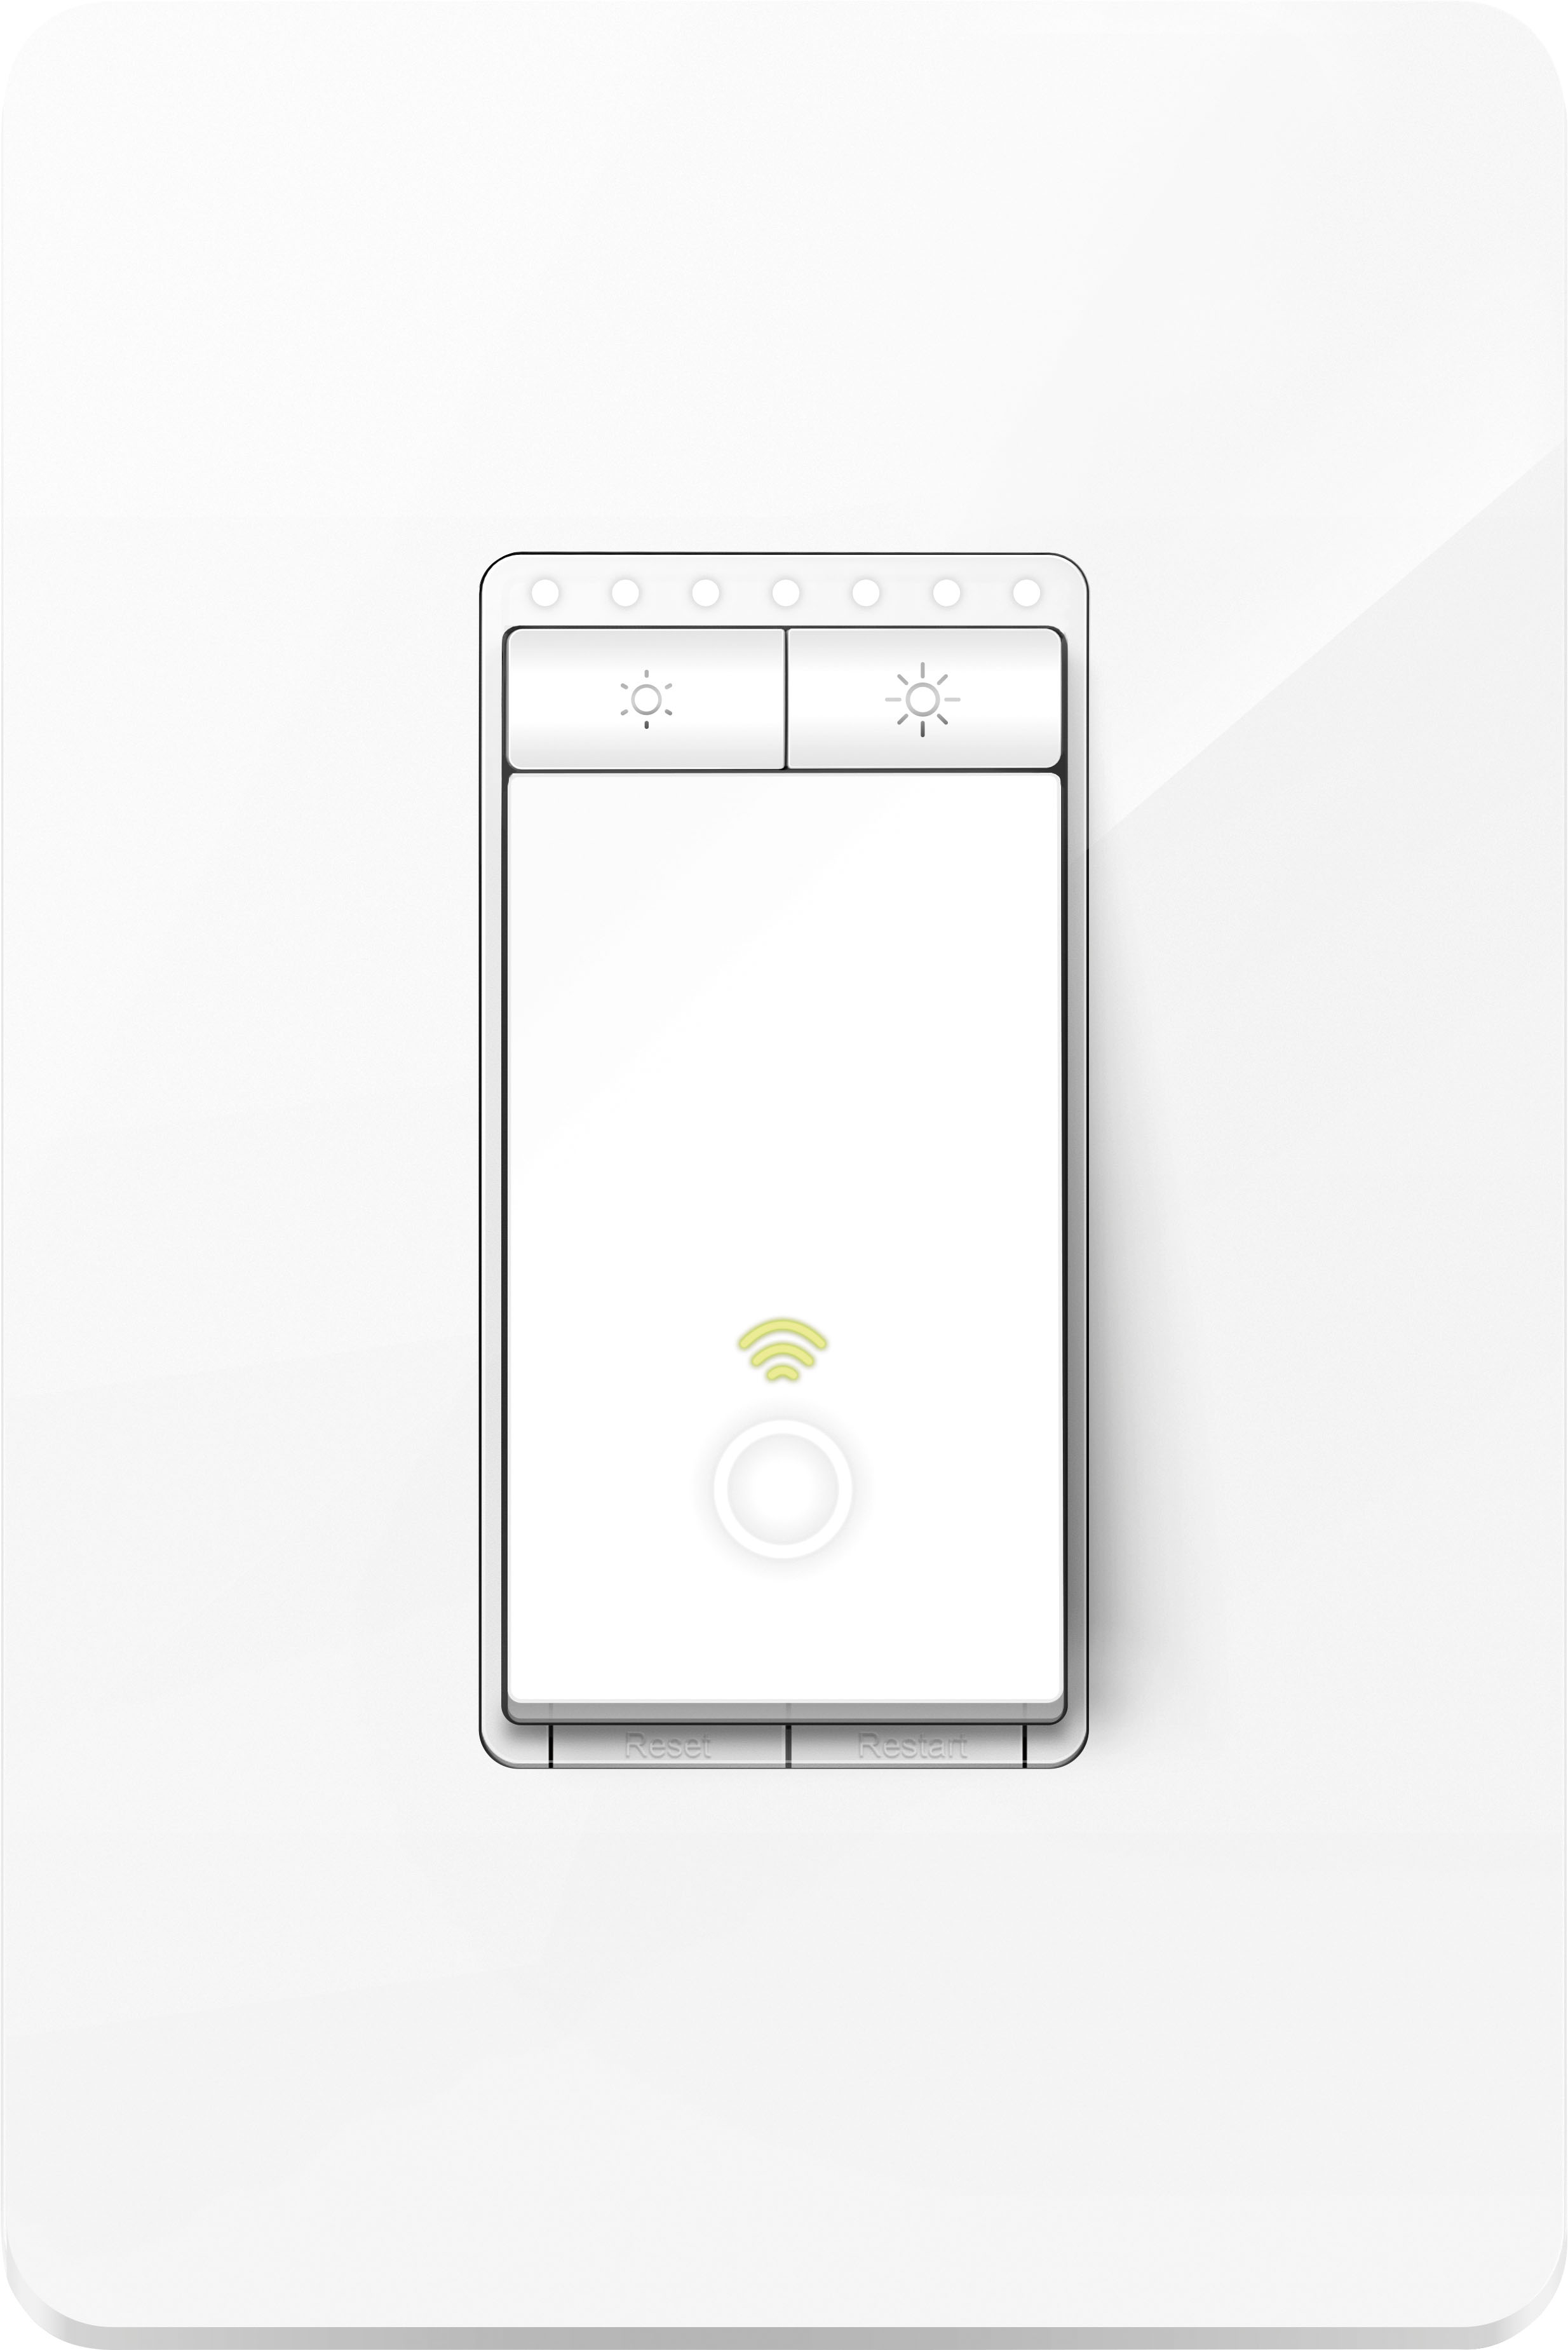 engel Legacy Geliefde TP-Link Kasa Wi-Fi Smart Light Dimmer Switch White HS220 - Best Buy